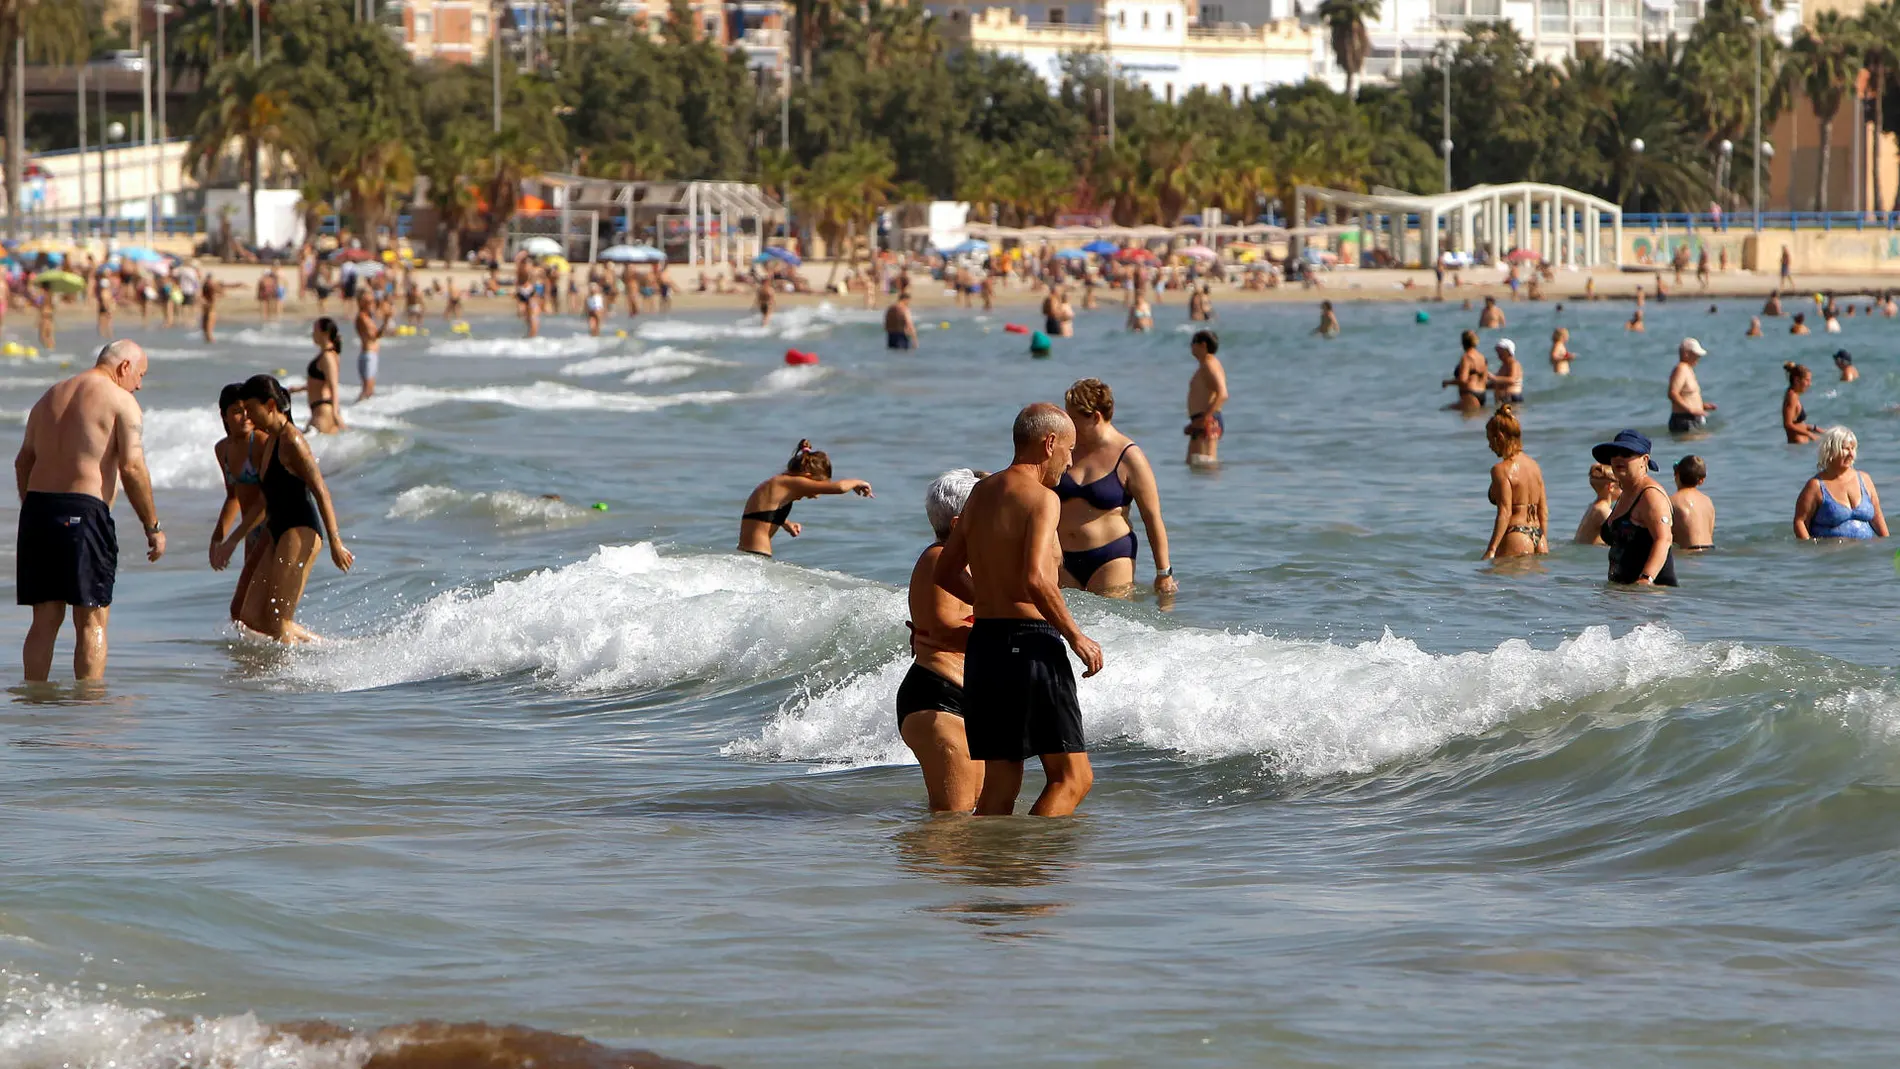 Imagen de la playa urbana del Postiguet, en Alicante, con bañistas intentando soportar las altas temperaturas del mes de octubre.